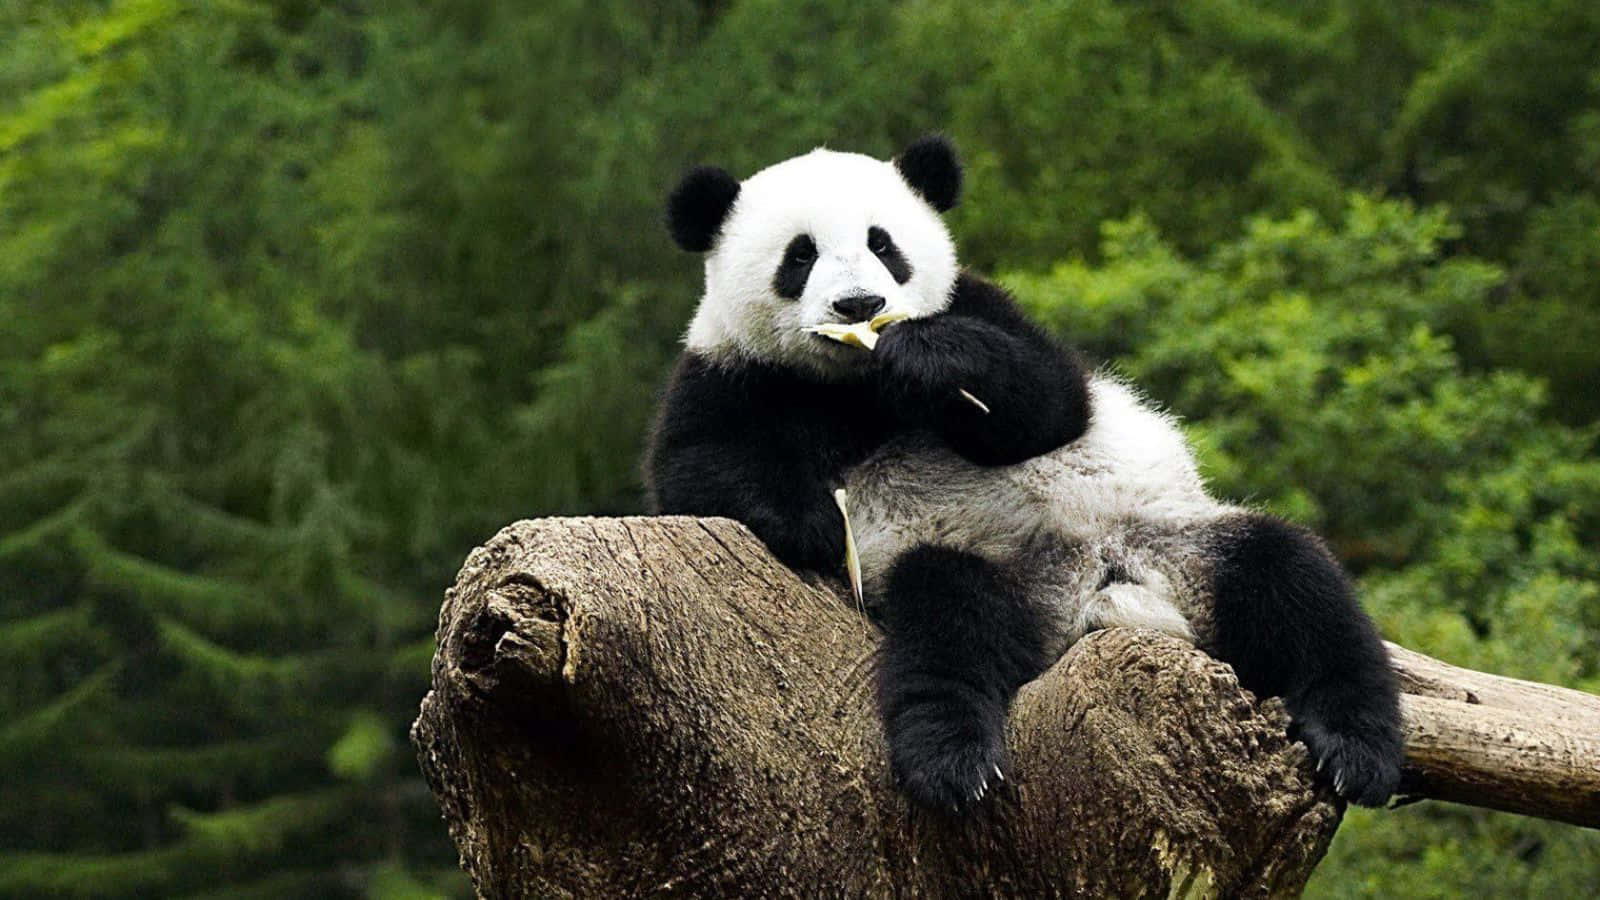 Uniktbillede Af En Panda, Der Spiser Bambus I Vildnisset.